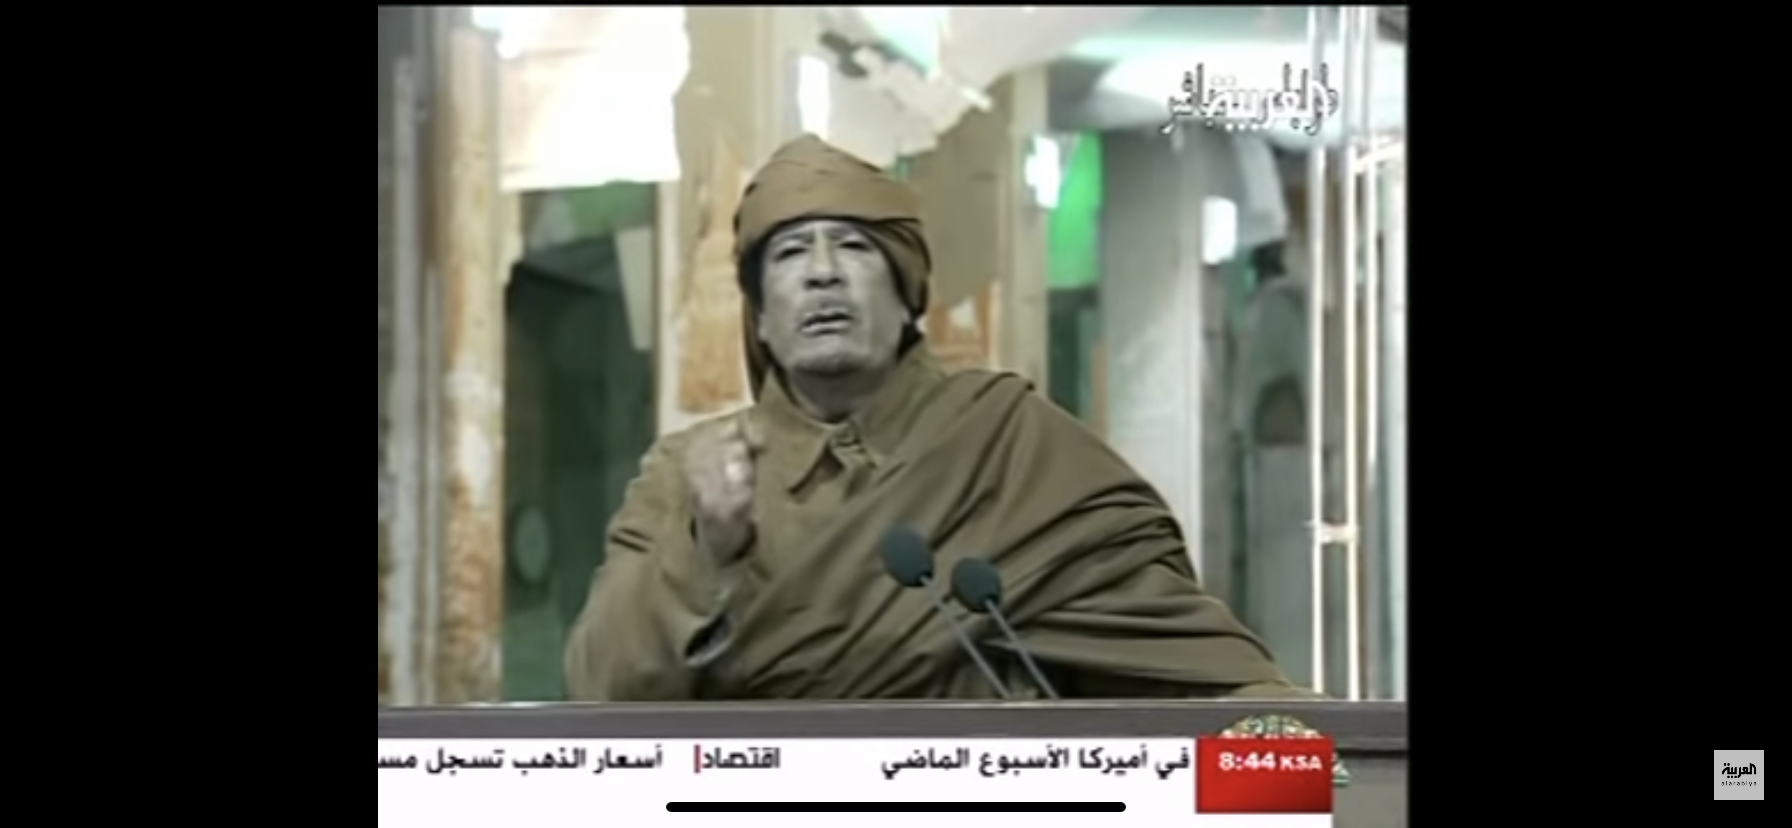 بالفيديو :غرائب وعجائب القذافي وهو يتحدث للجمهور